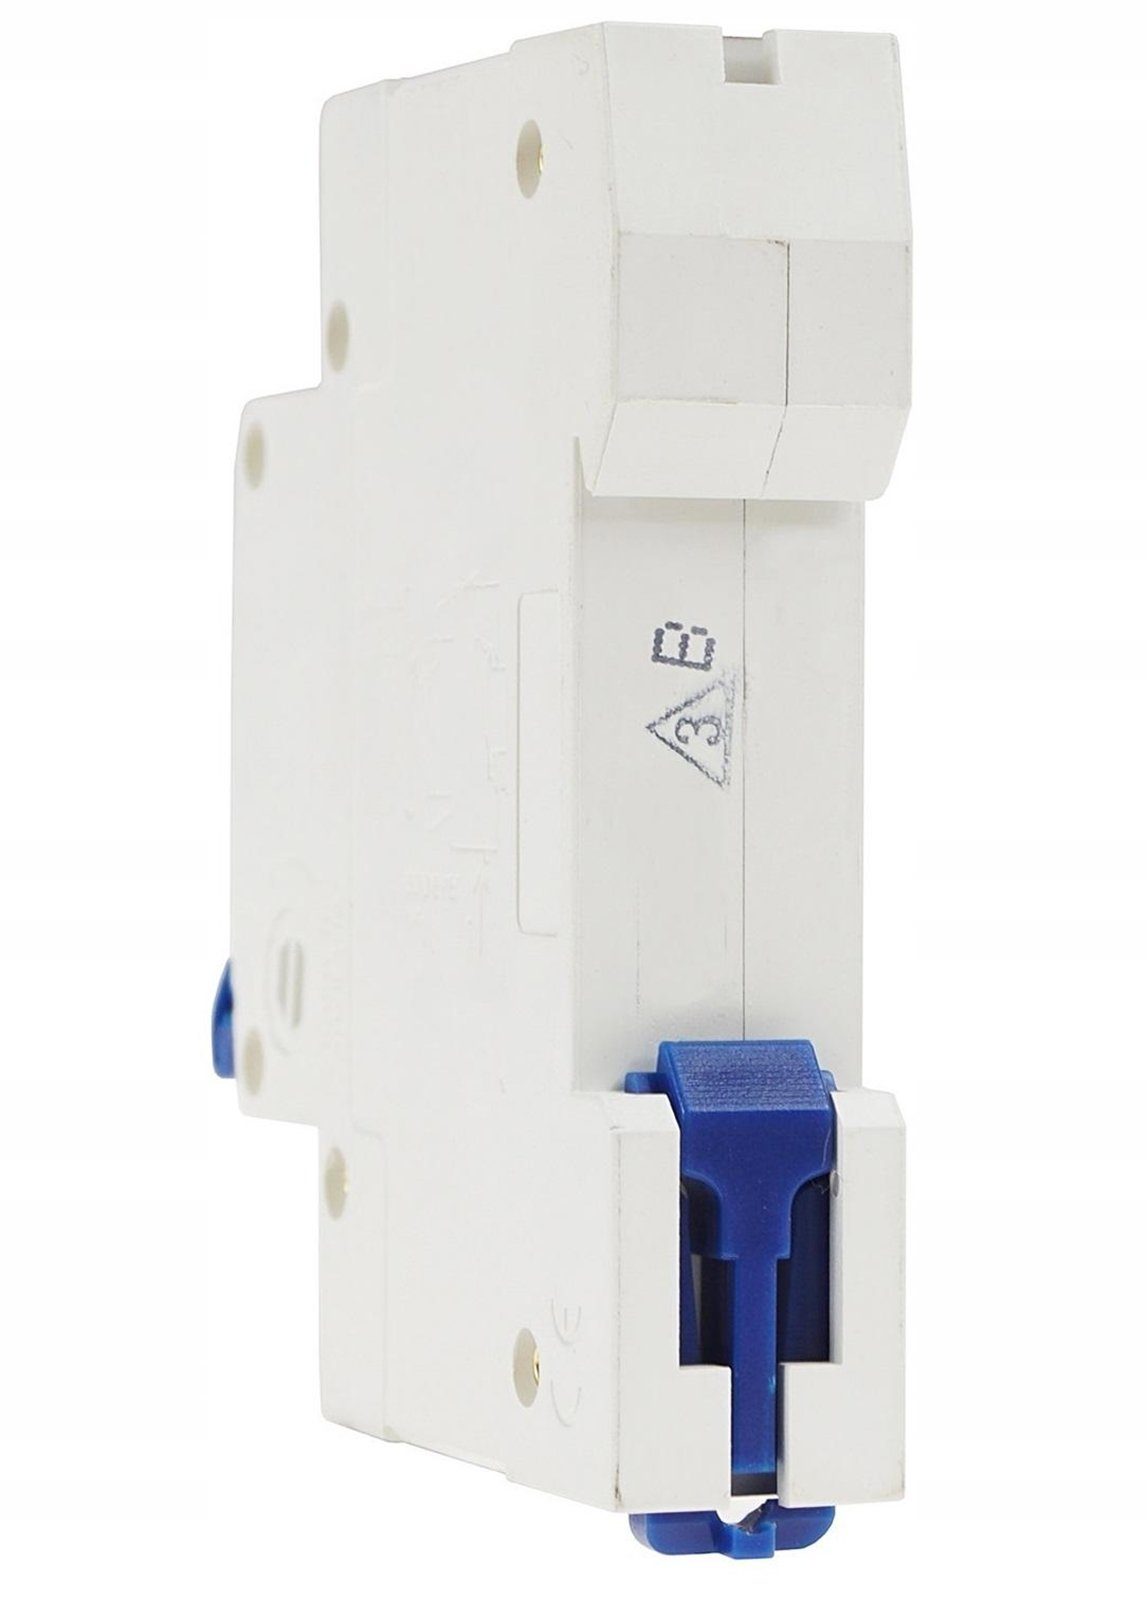 ADELID Schalter, LS-Schalter AC 230/400V 16A Sicherungsautomat 1-polig Leitungsschutzschalter B